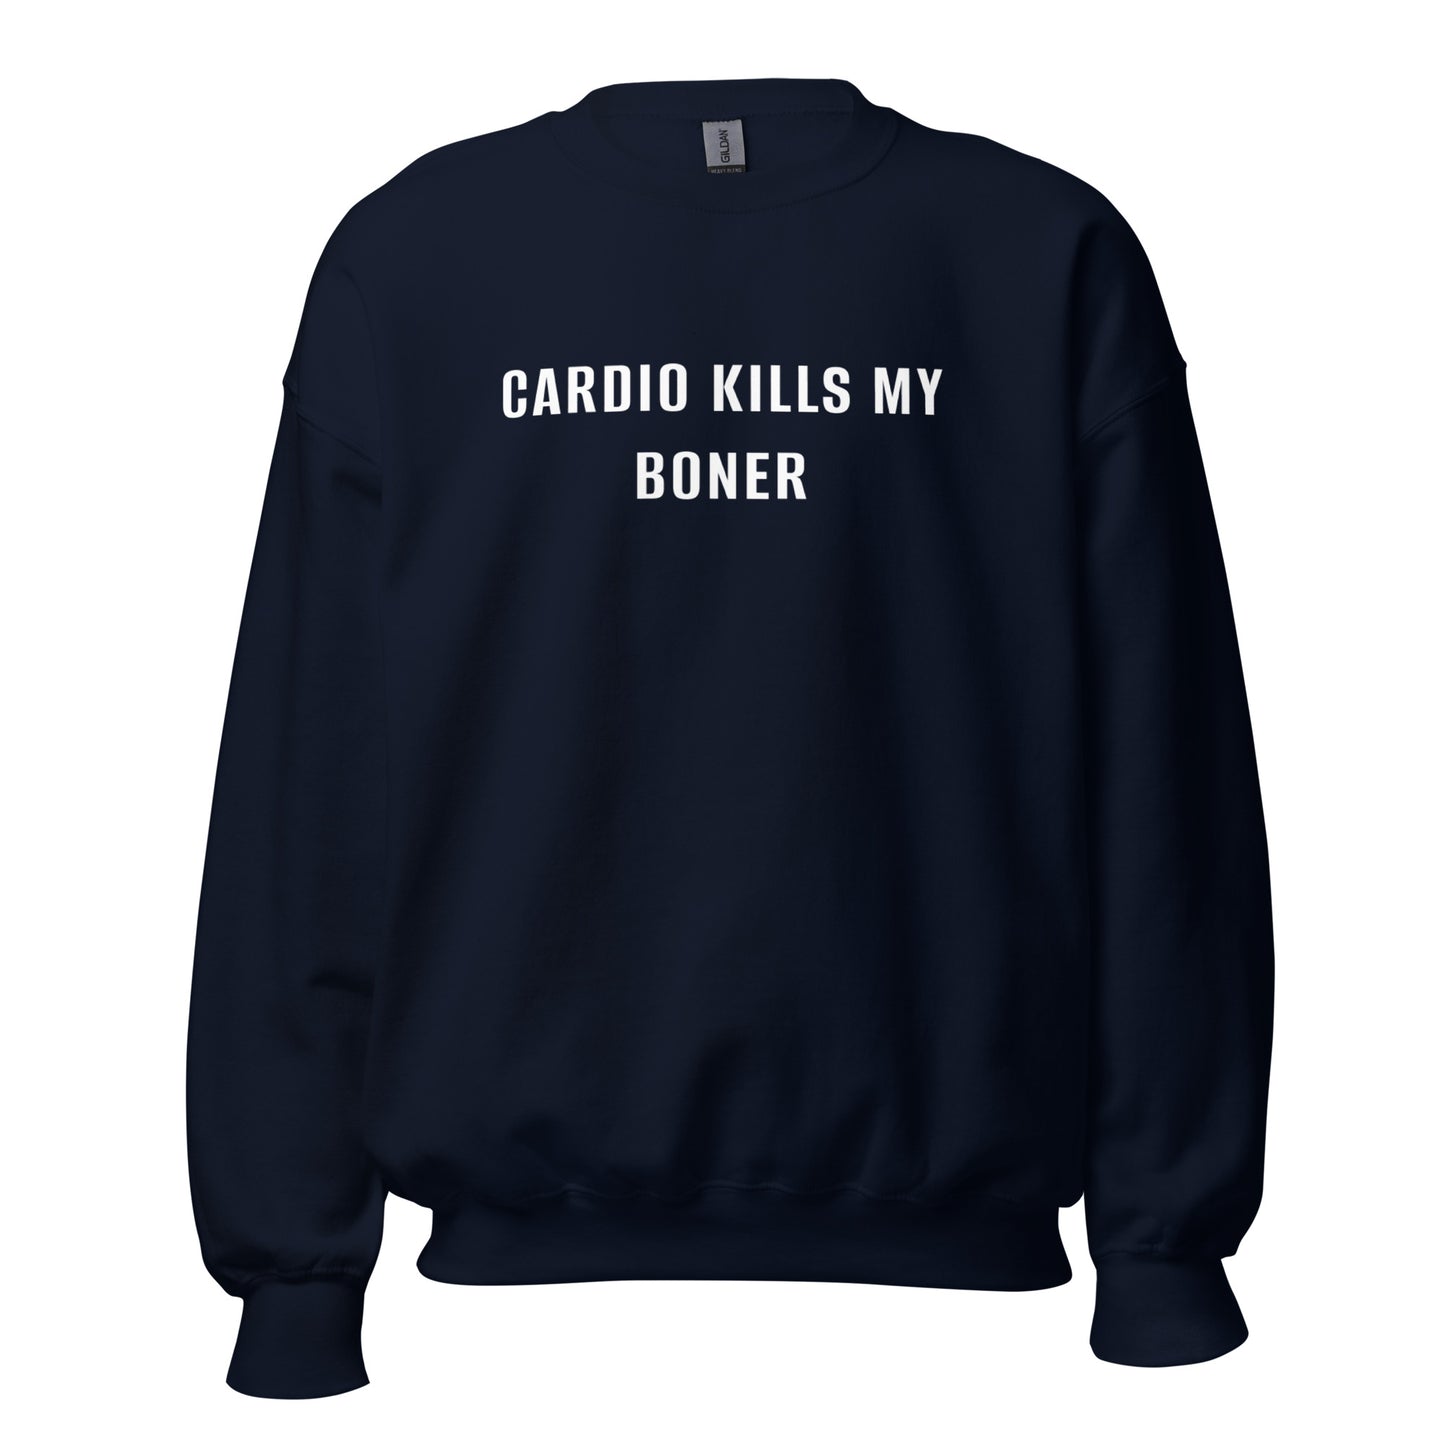 CARDIO KILLS MY BONER